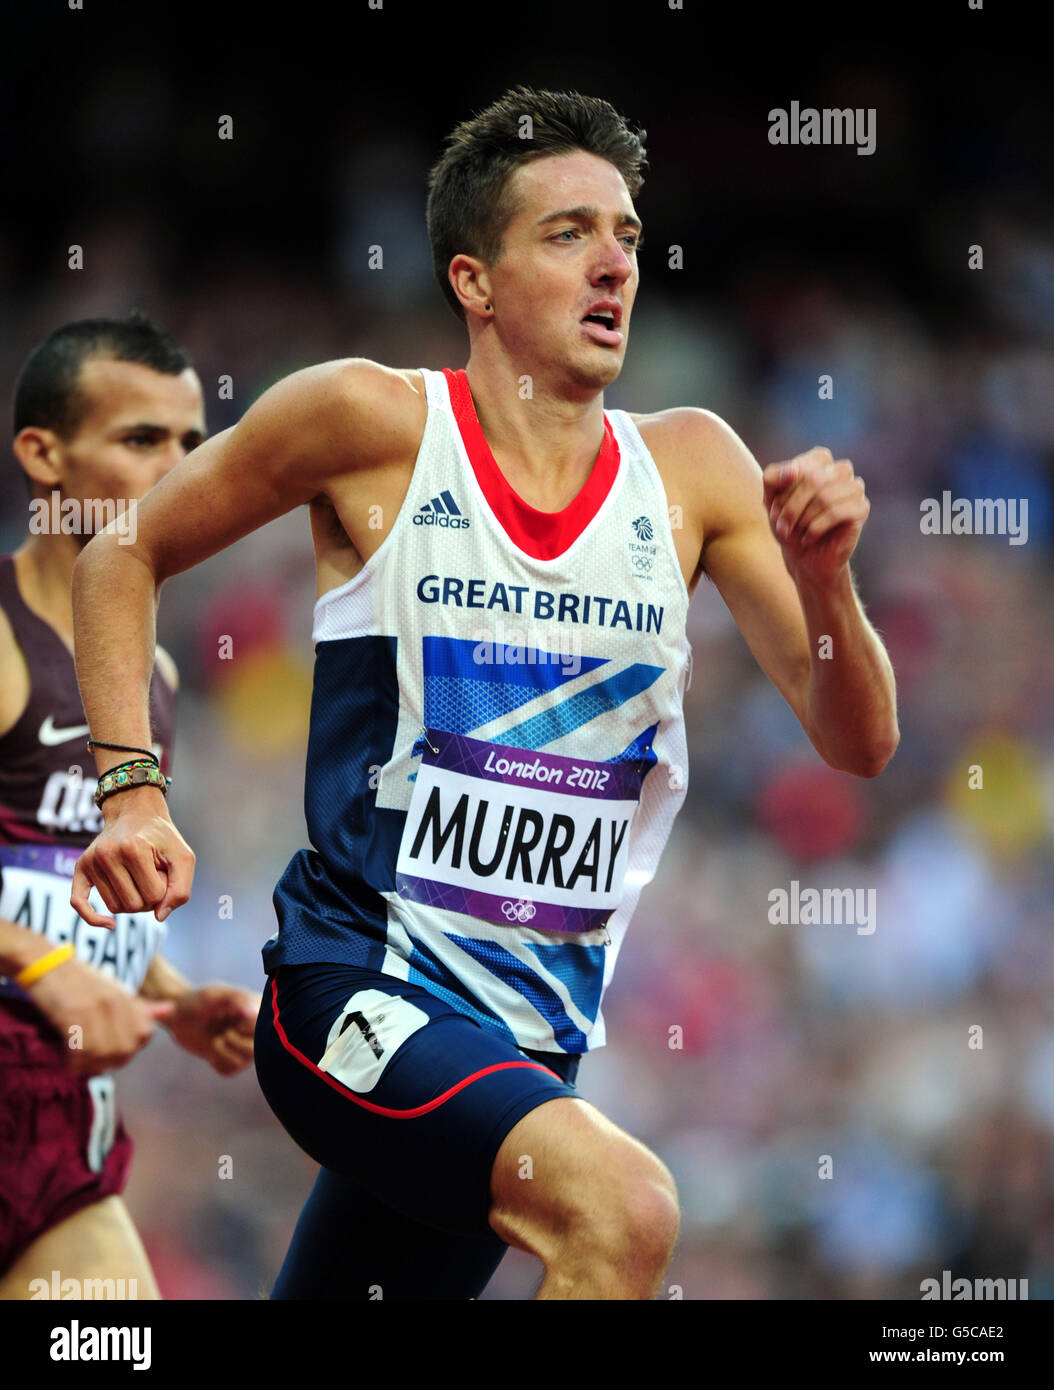 Olympische Spiele In London - Tag 7. Der britische Ross Murray tritt am siebten Tag der Olympischen Spiele 2012 in London auf den 1500 m der Männer im Olympiastadion in London an. Stockfoto